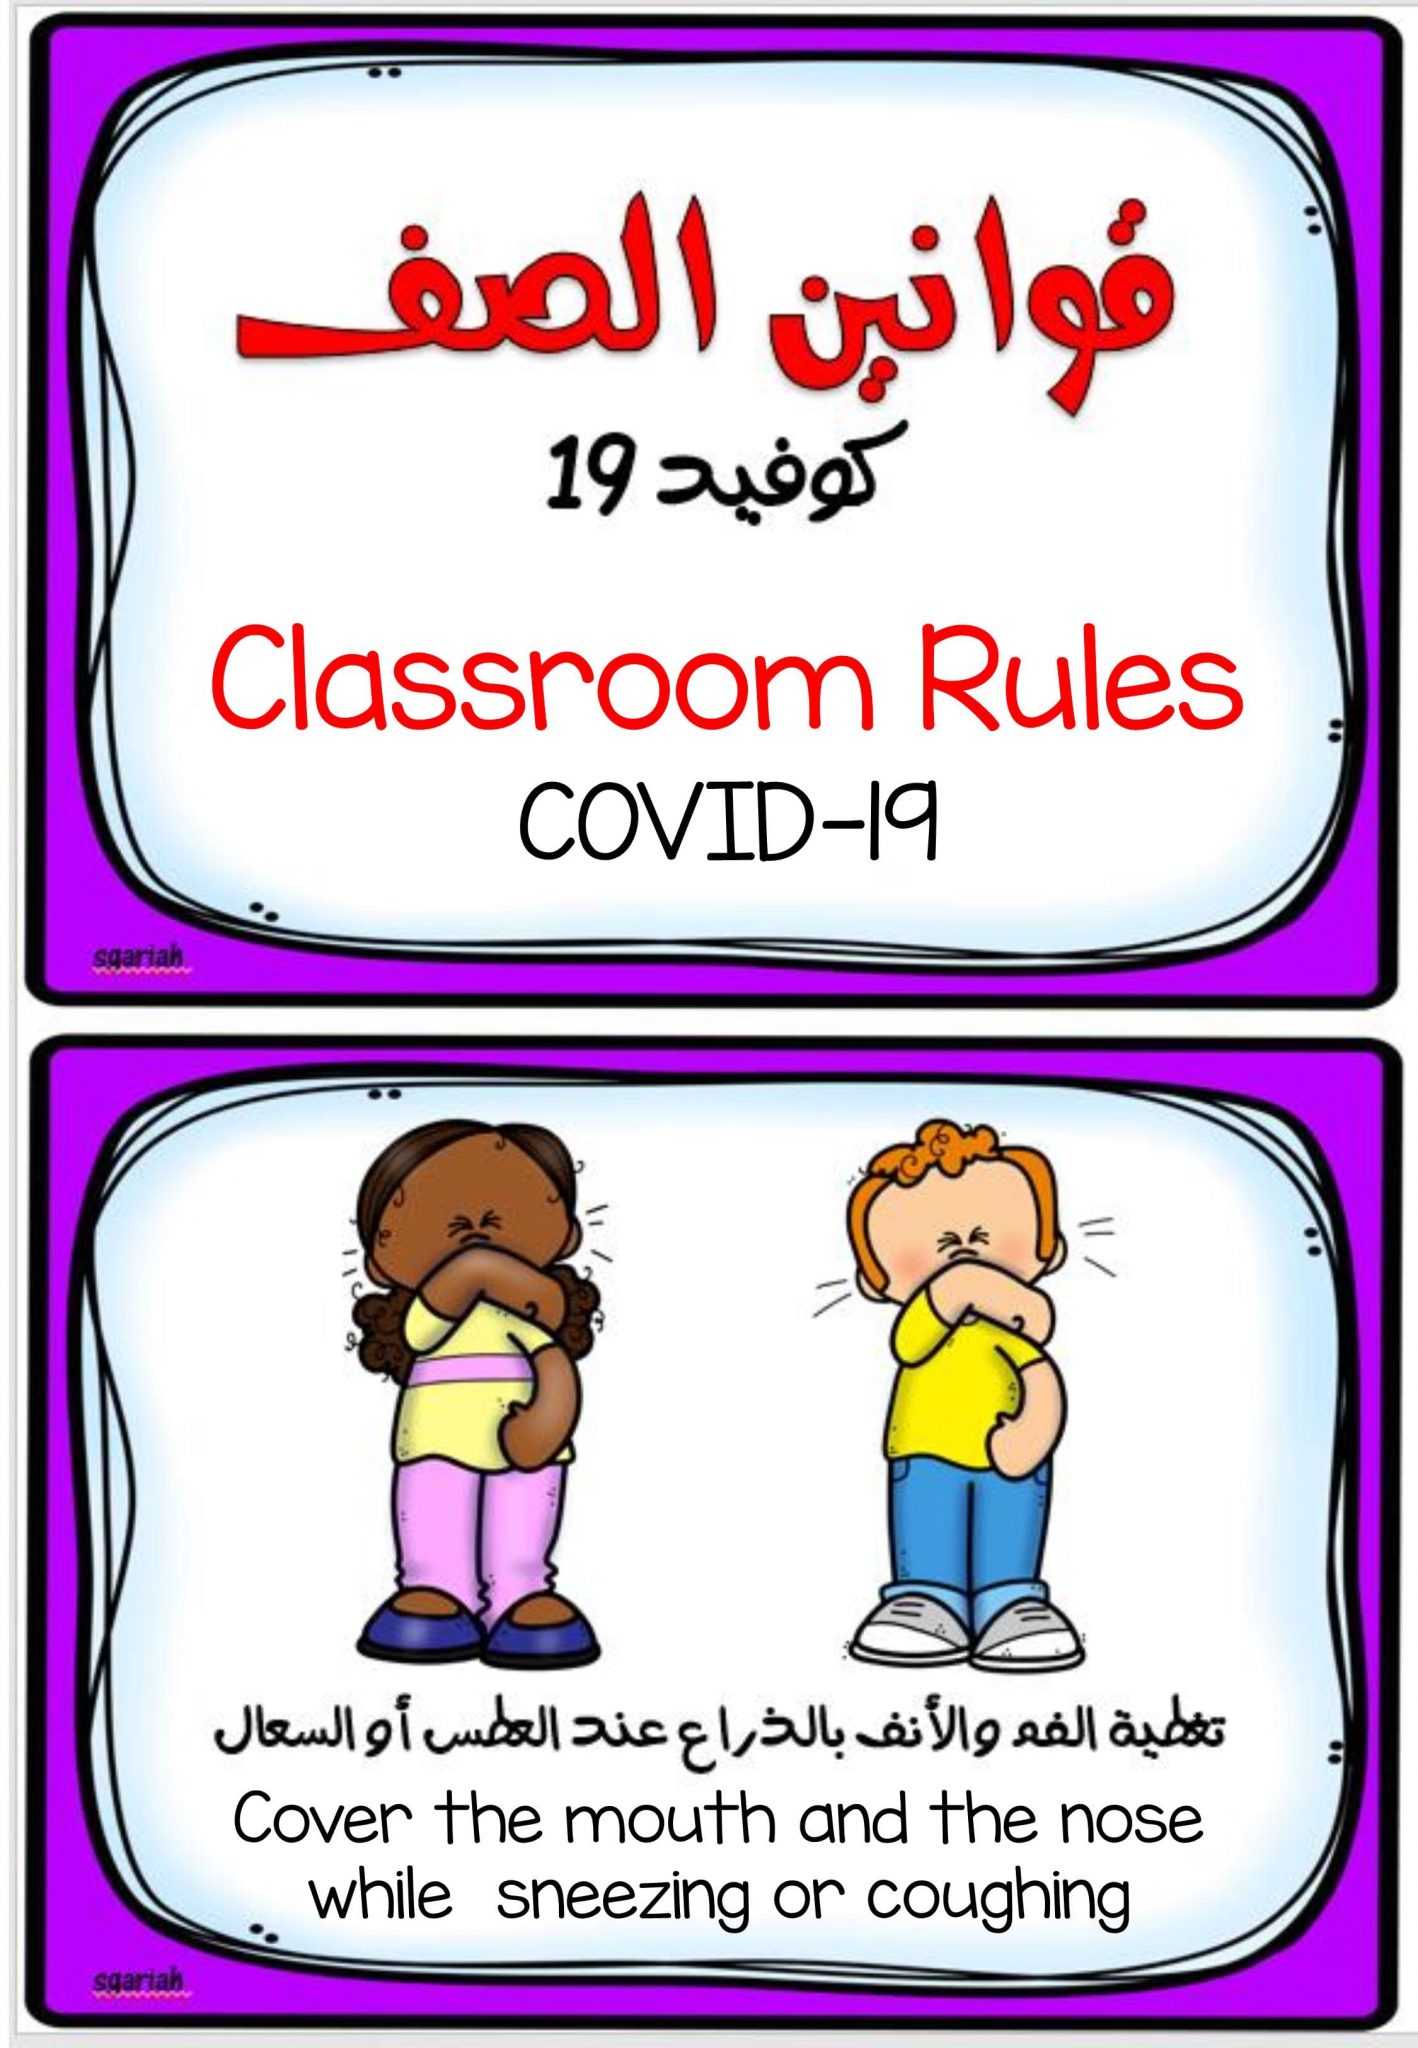 بطاقات تعليمية لقوانين الصف كوفيد 19 لرياض الاطفال المعلمة أسماء